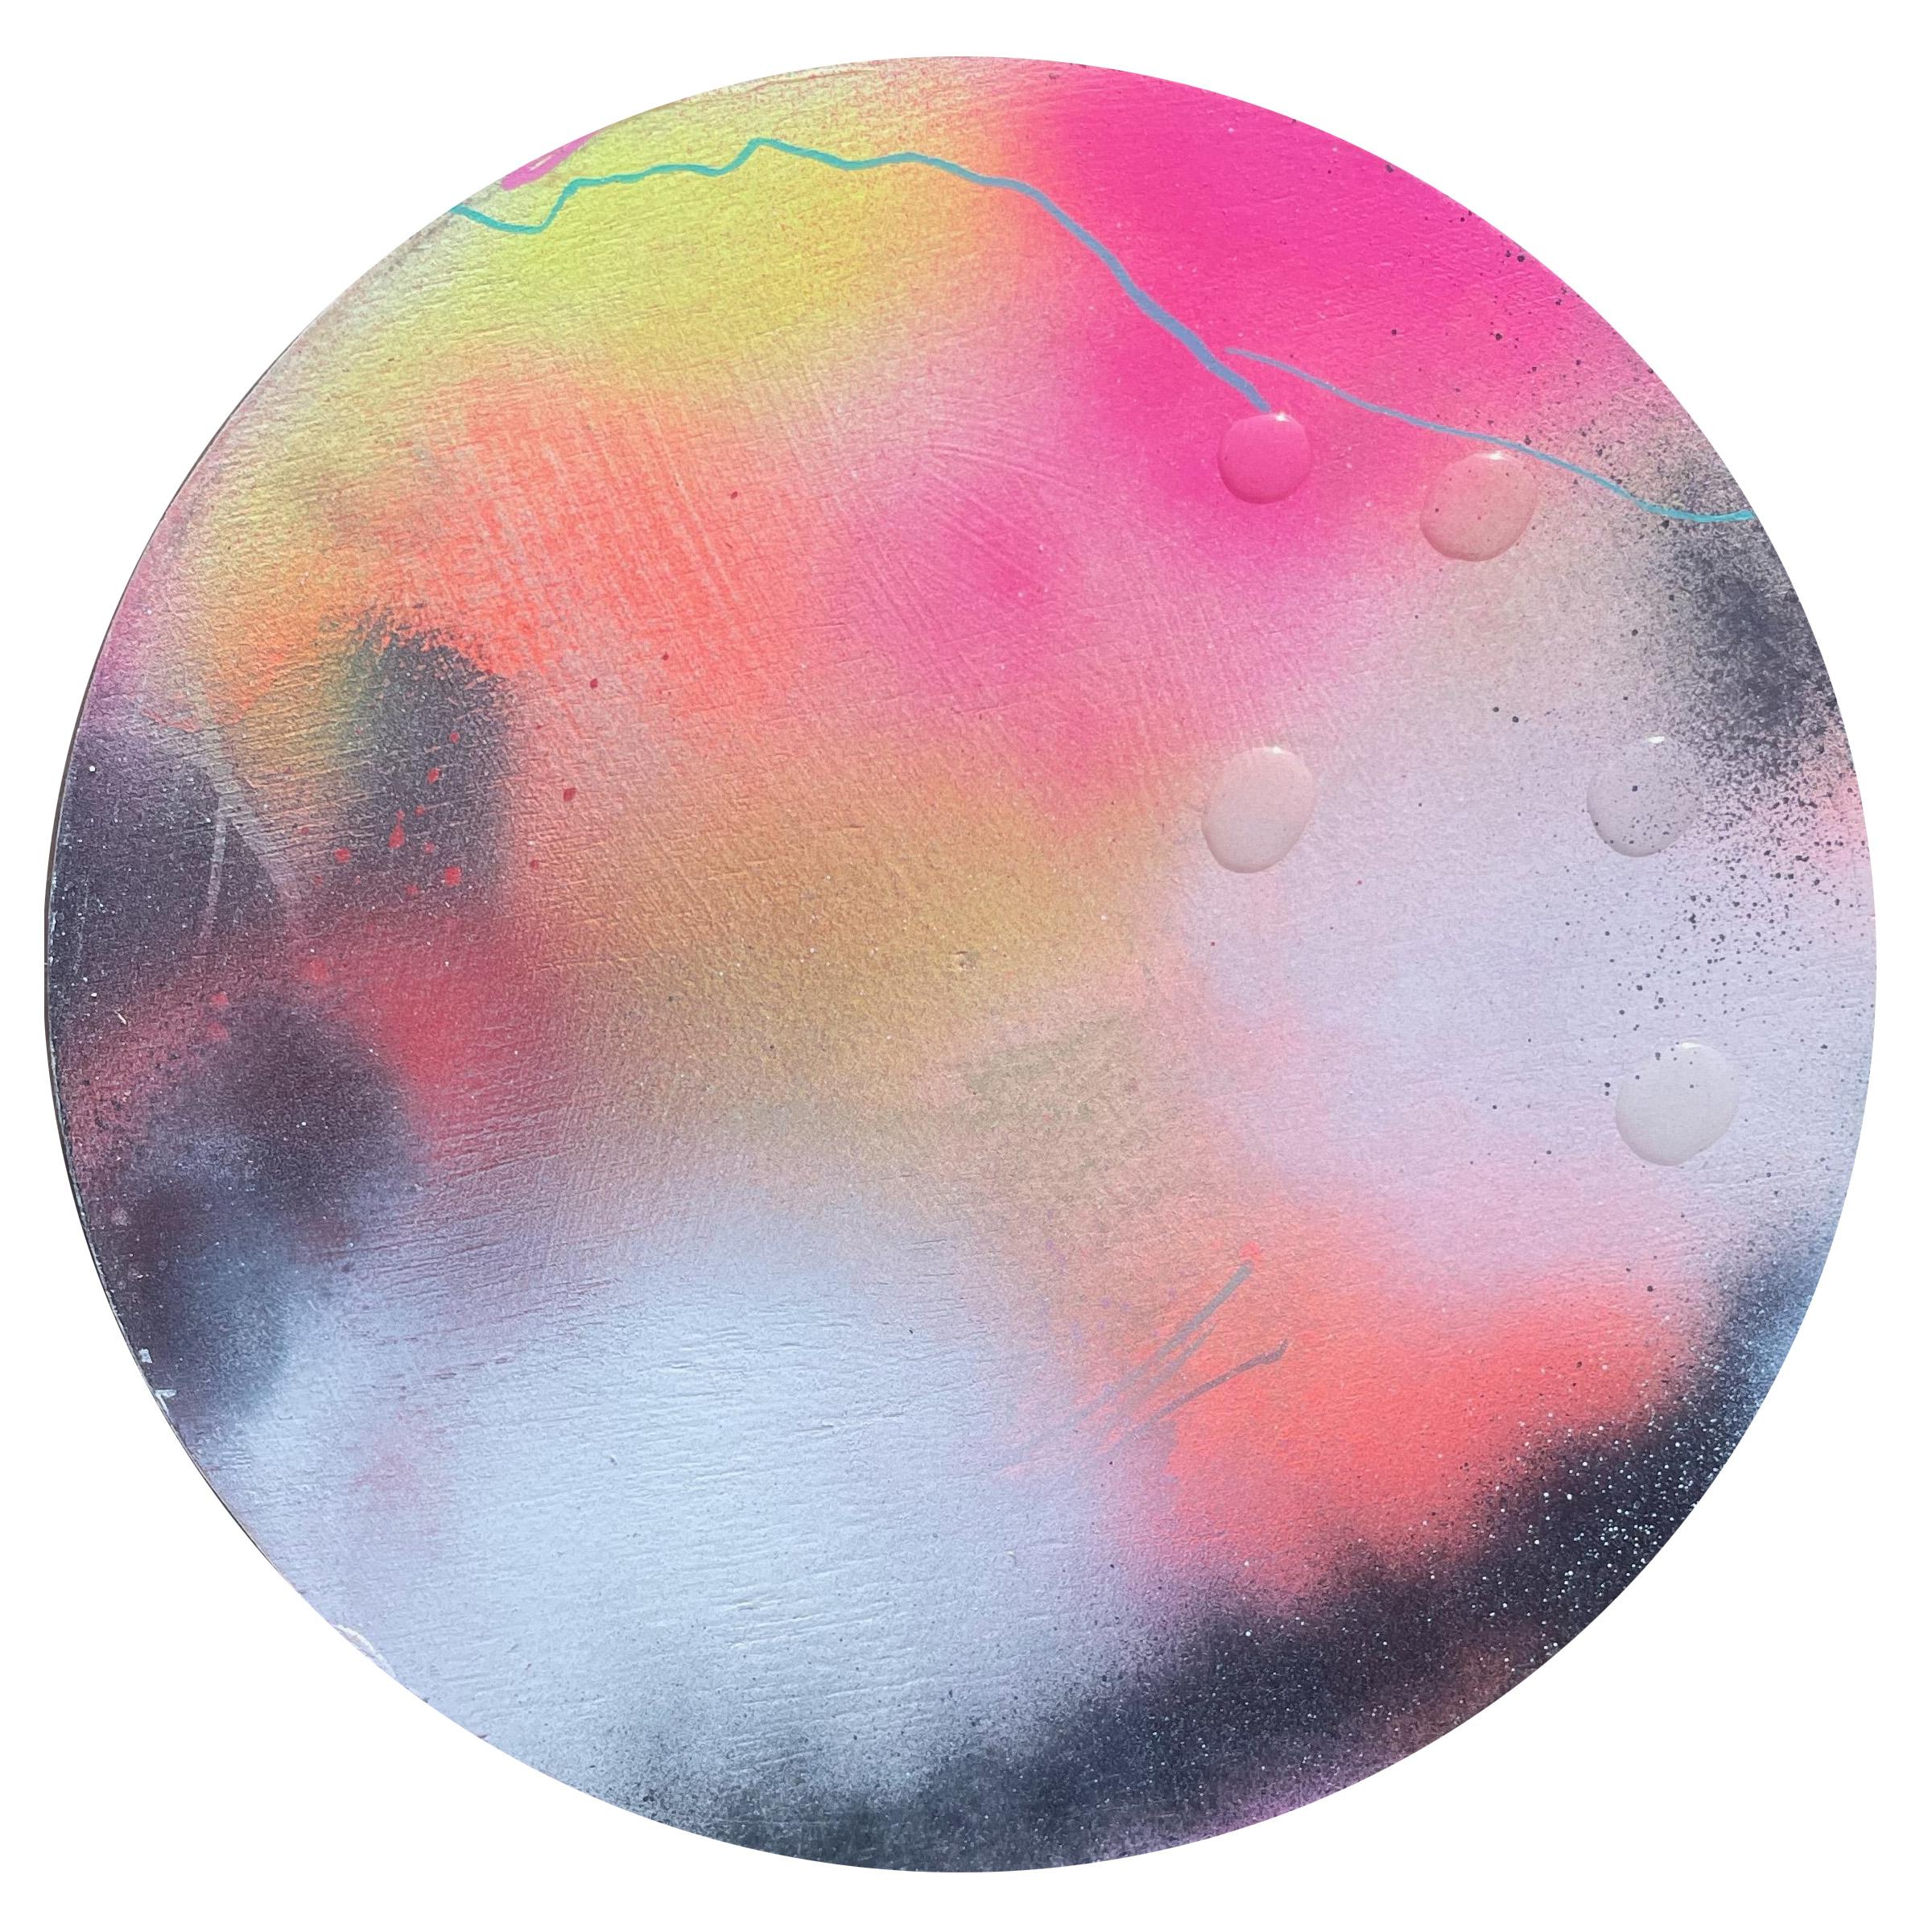 "Perlende Tautropfen 1" Zeitgenössische farbenfrohe abstrakte kreisförmige Malerei